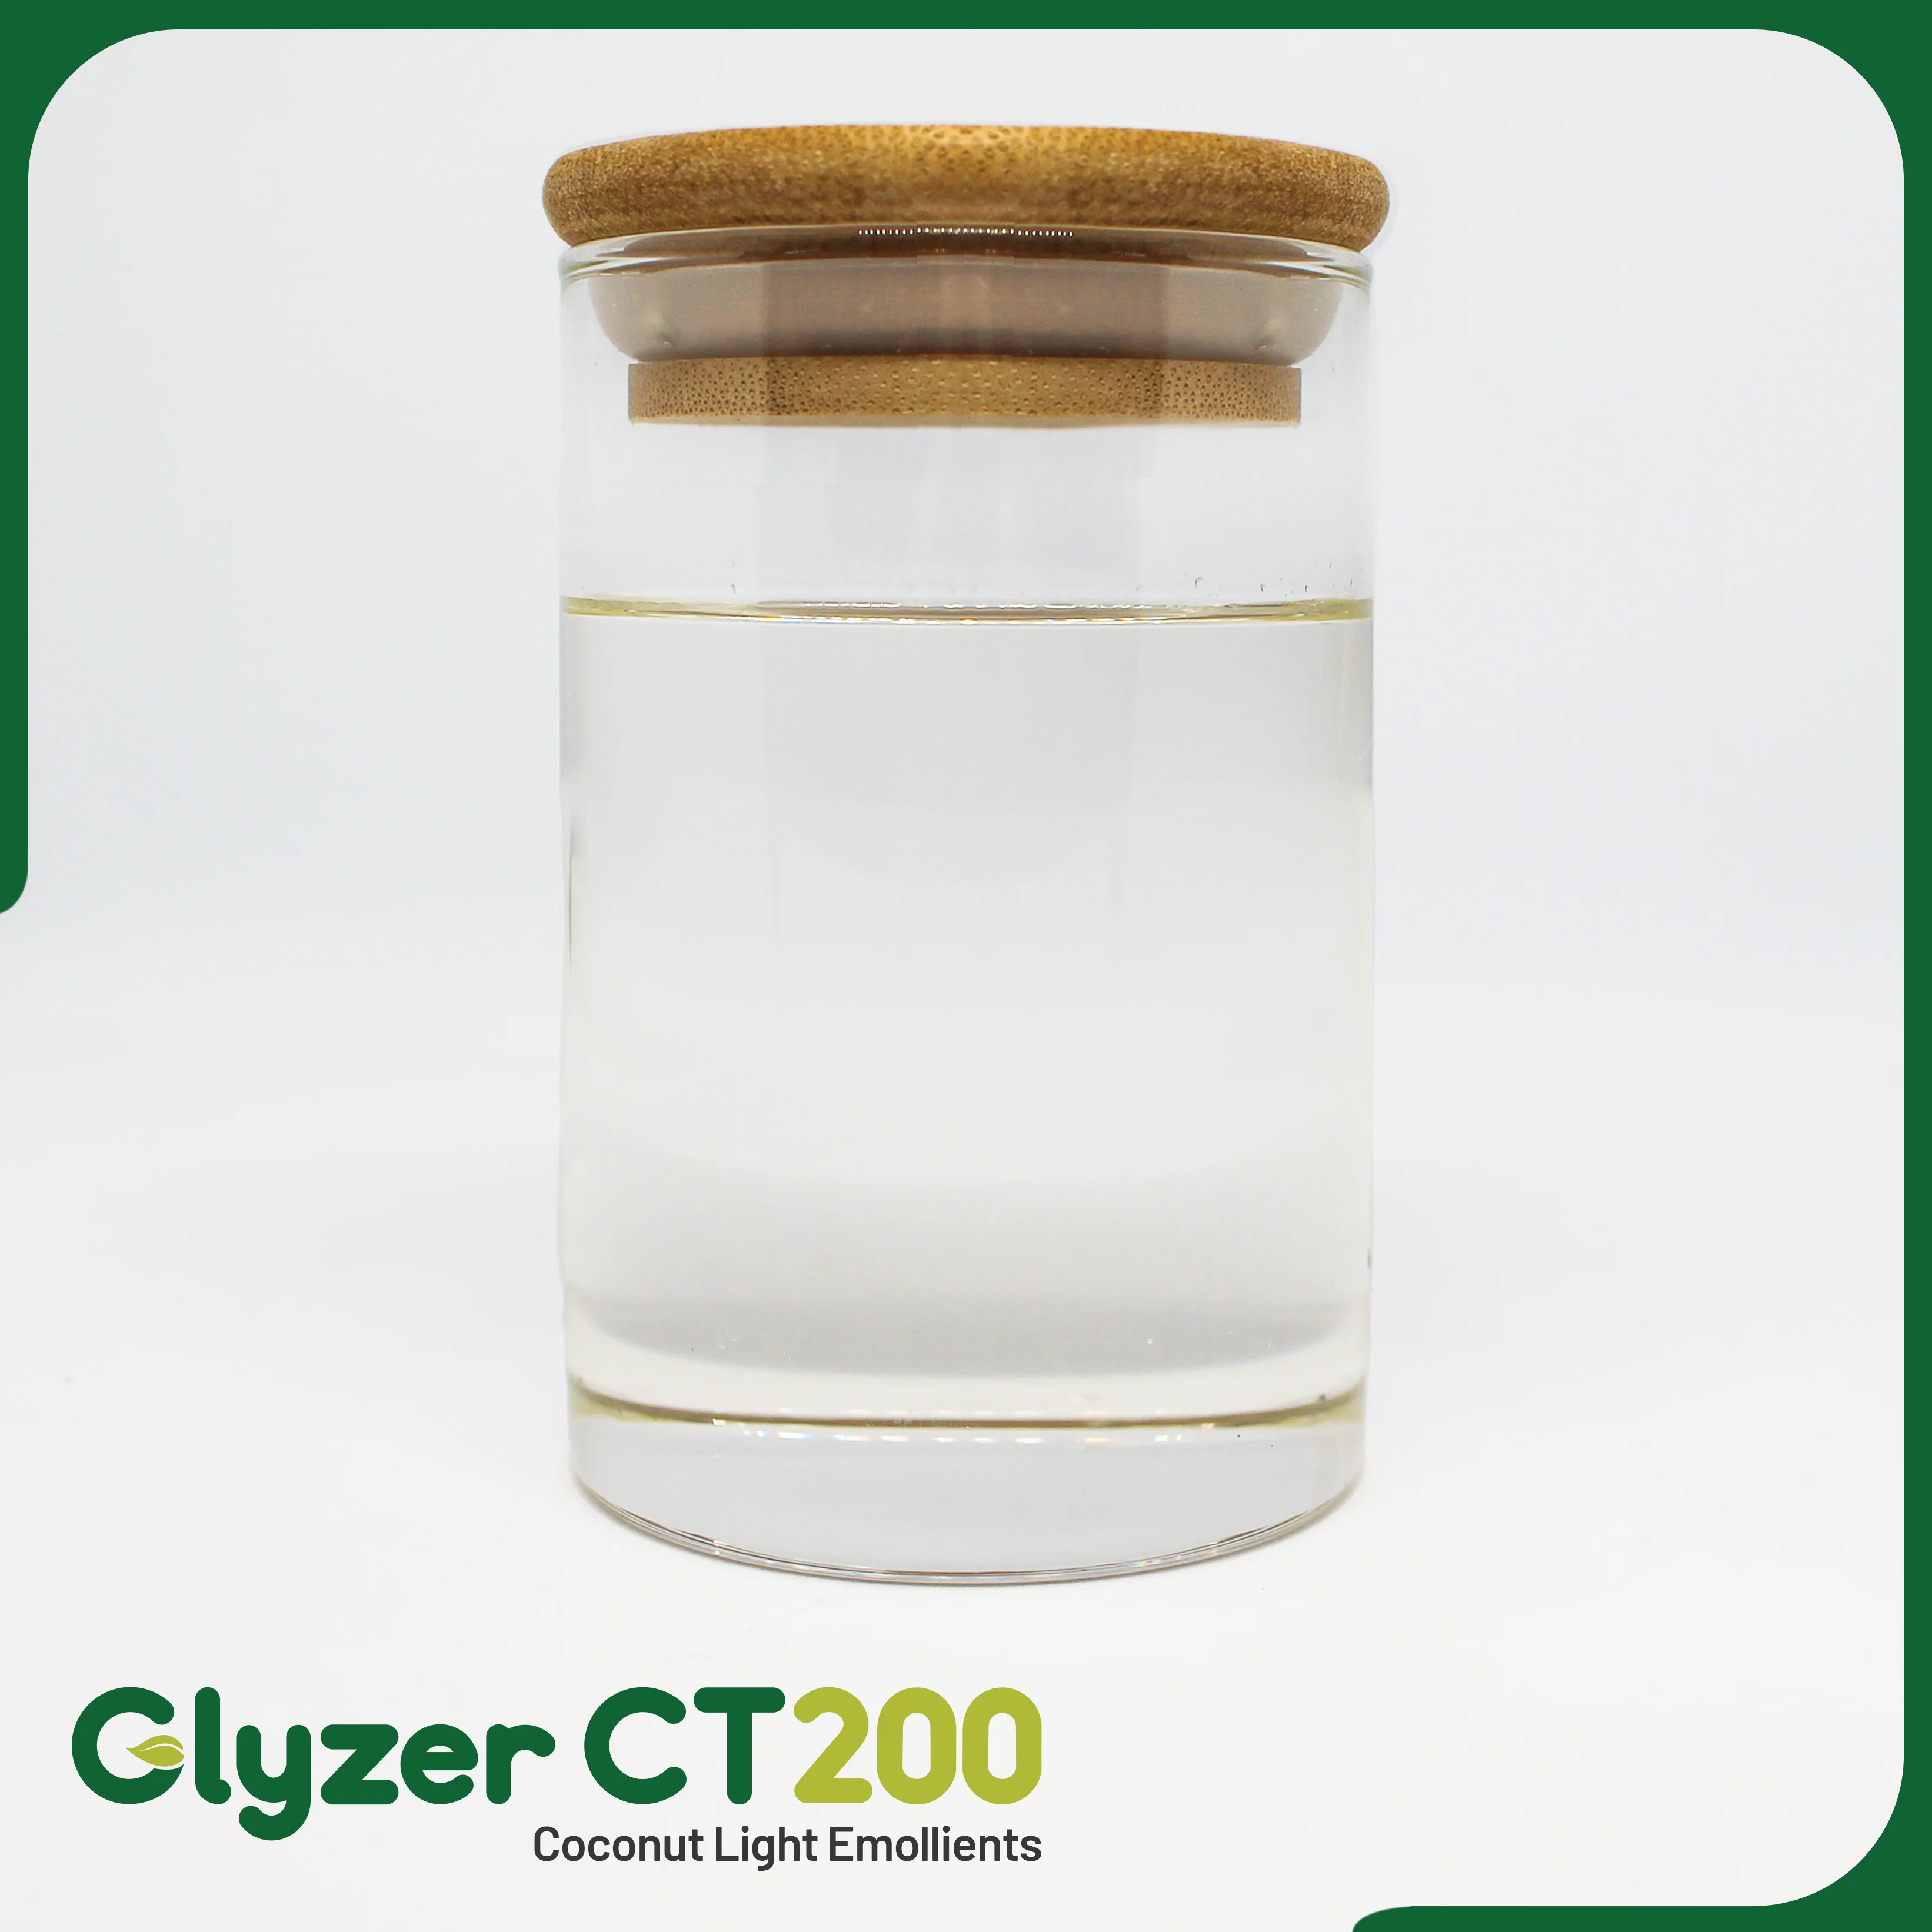 Glyzer-CT200